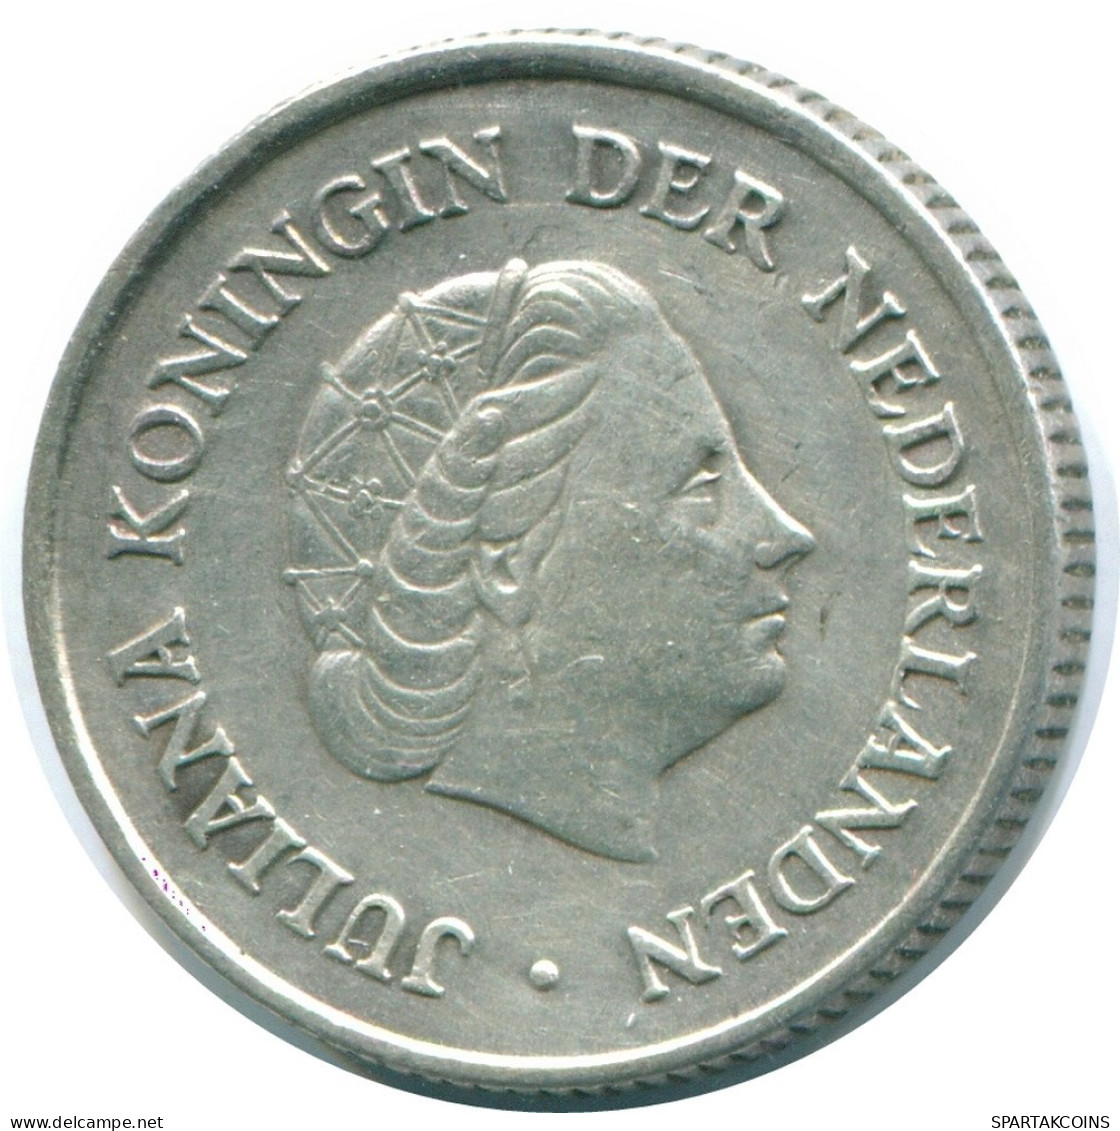 1/4 GULDEN 1965 NIEDERLÄNDISCHE ANTILLEN SILBER Koloniale Münze #NL11322.4.D.A - Antilles Néerlandaises